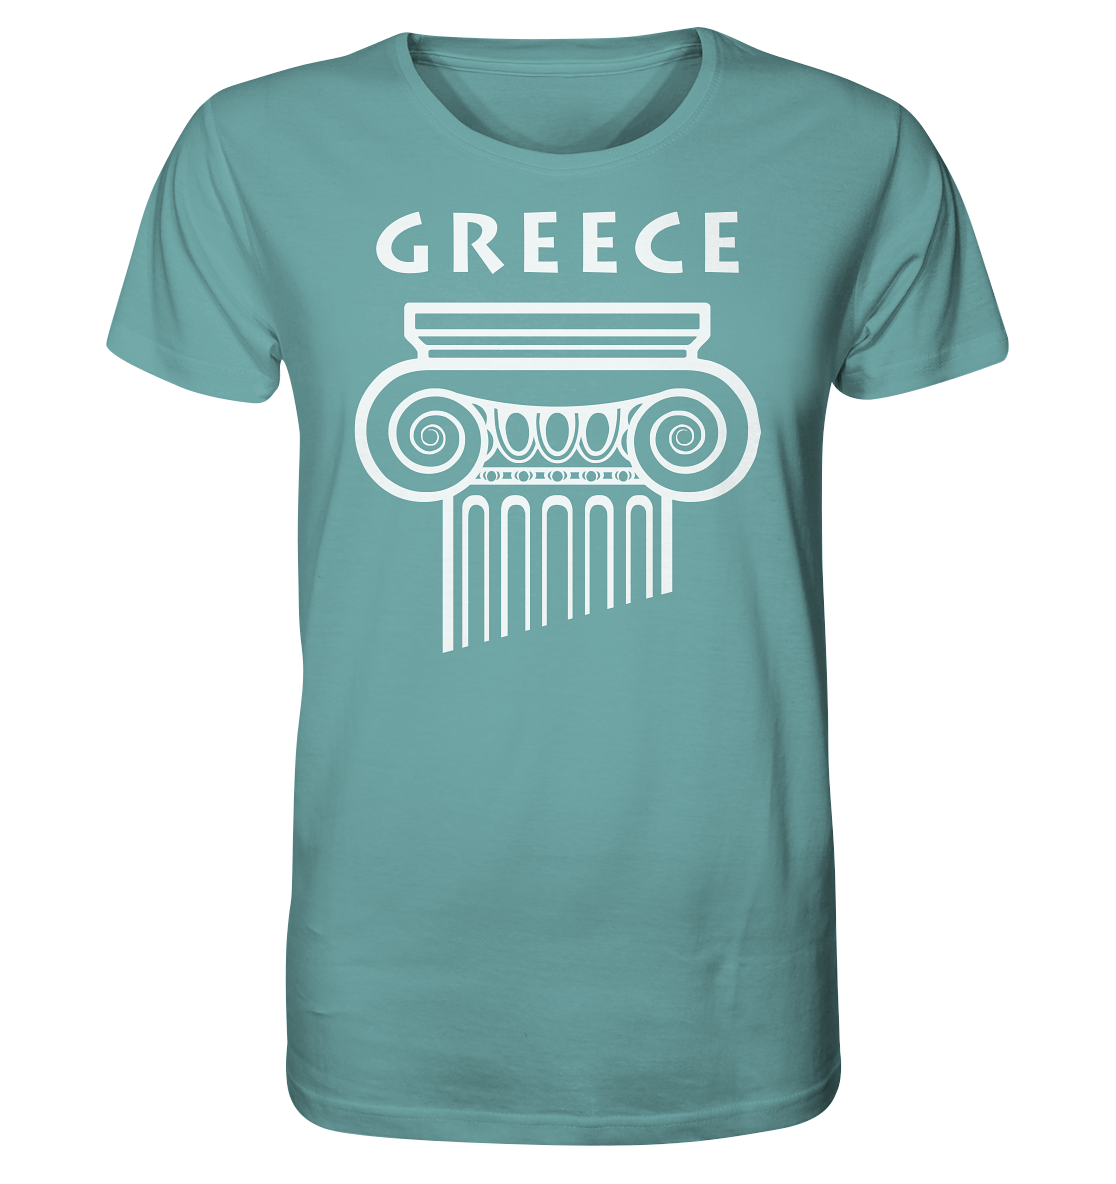 Greece Greek Column Head - Organic Shirt